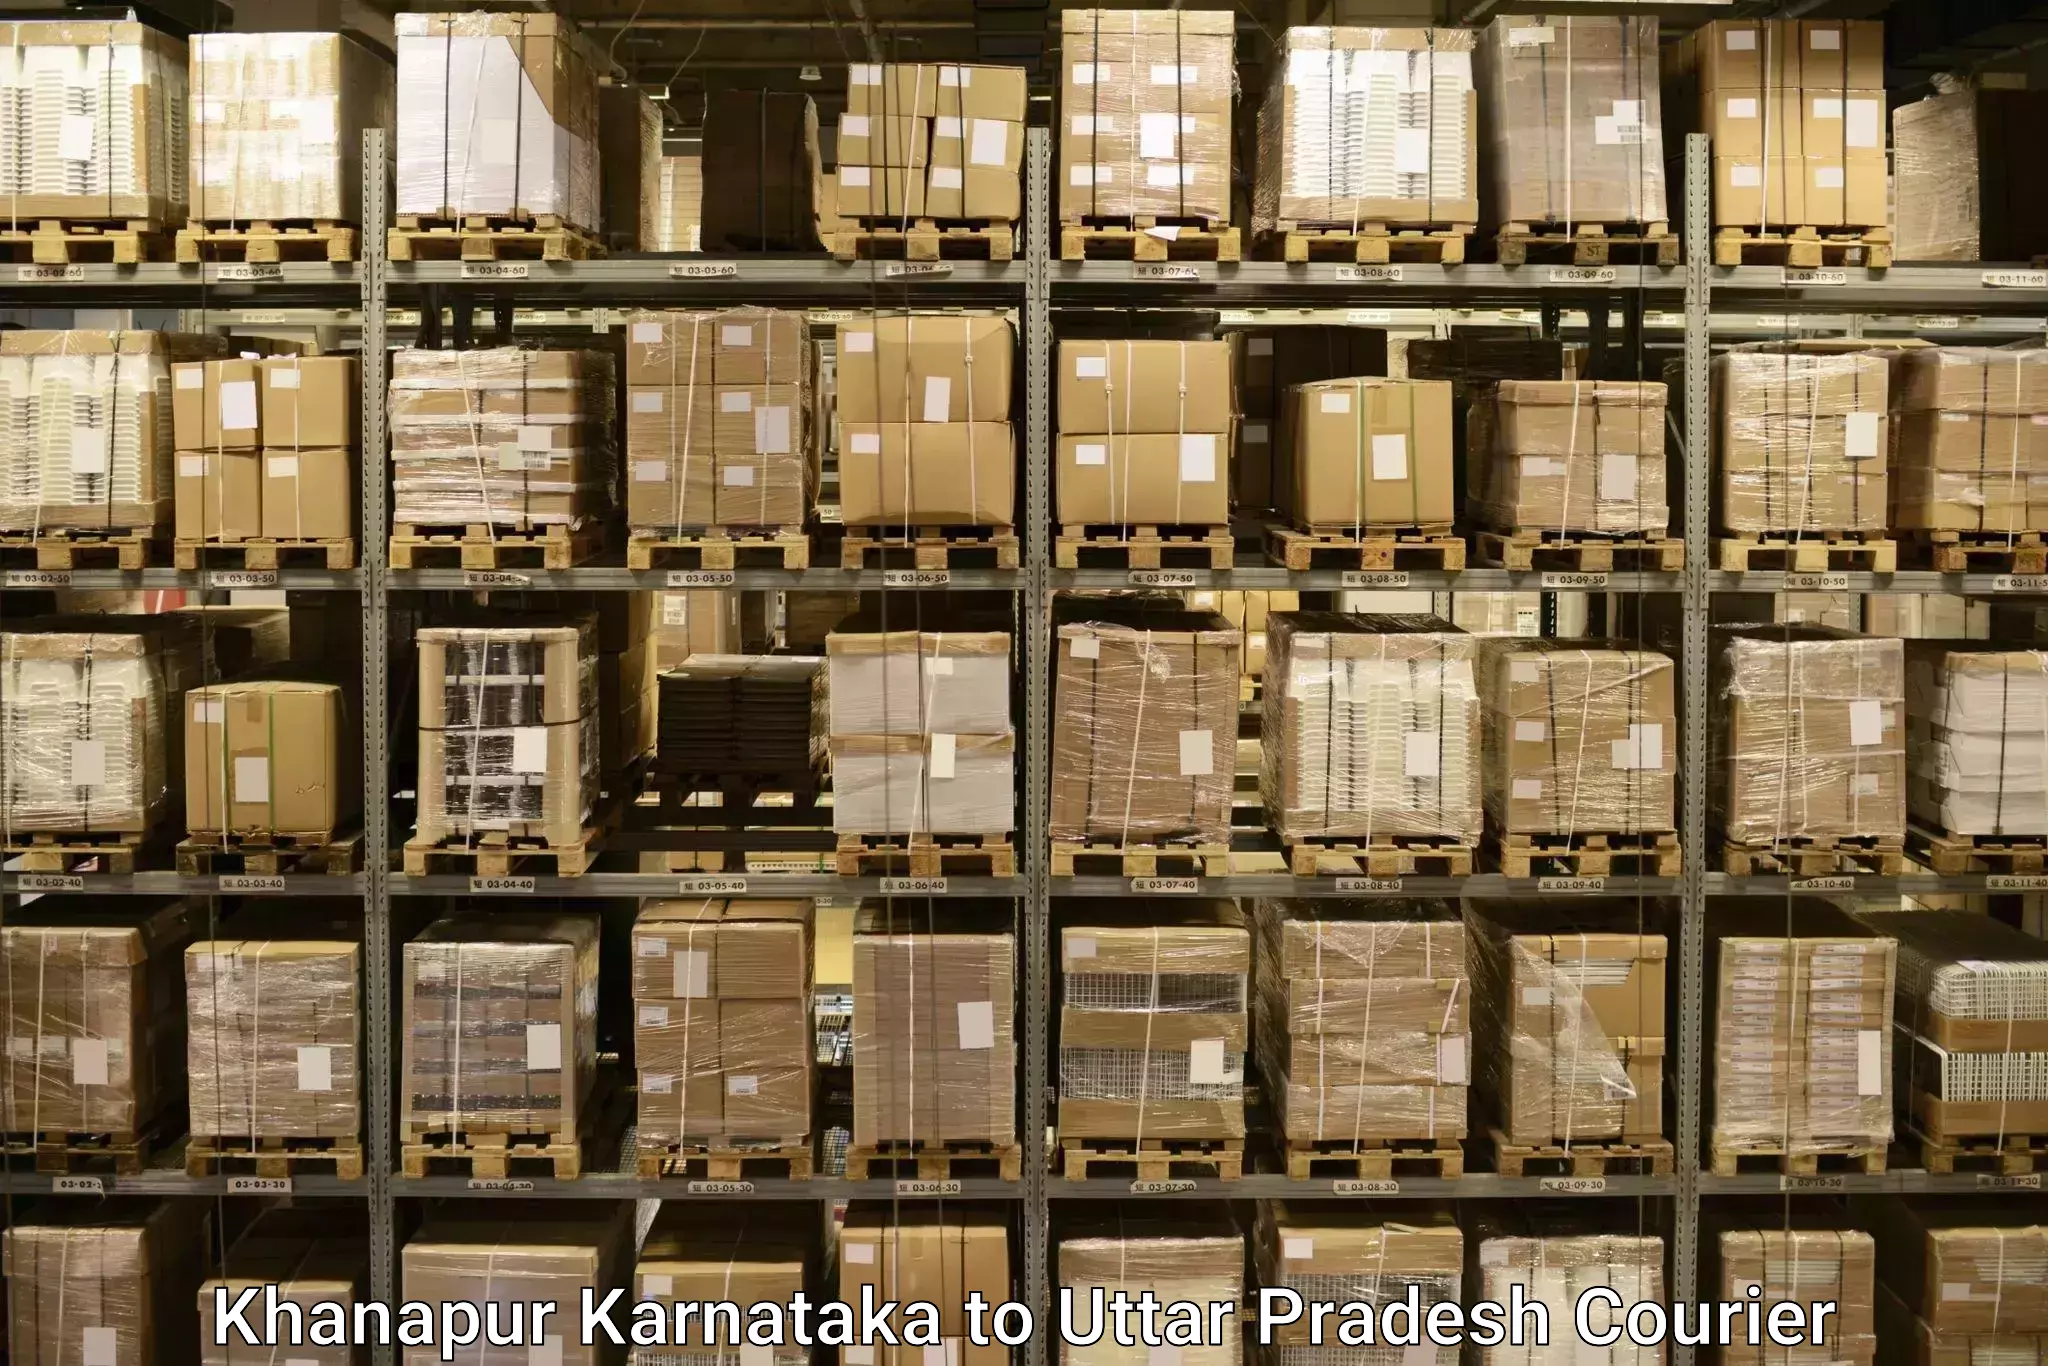 Luggage shipping guide Khanapur Karnataka to Sant Kabir Nagar